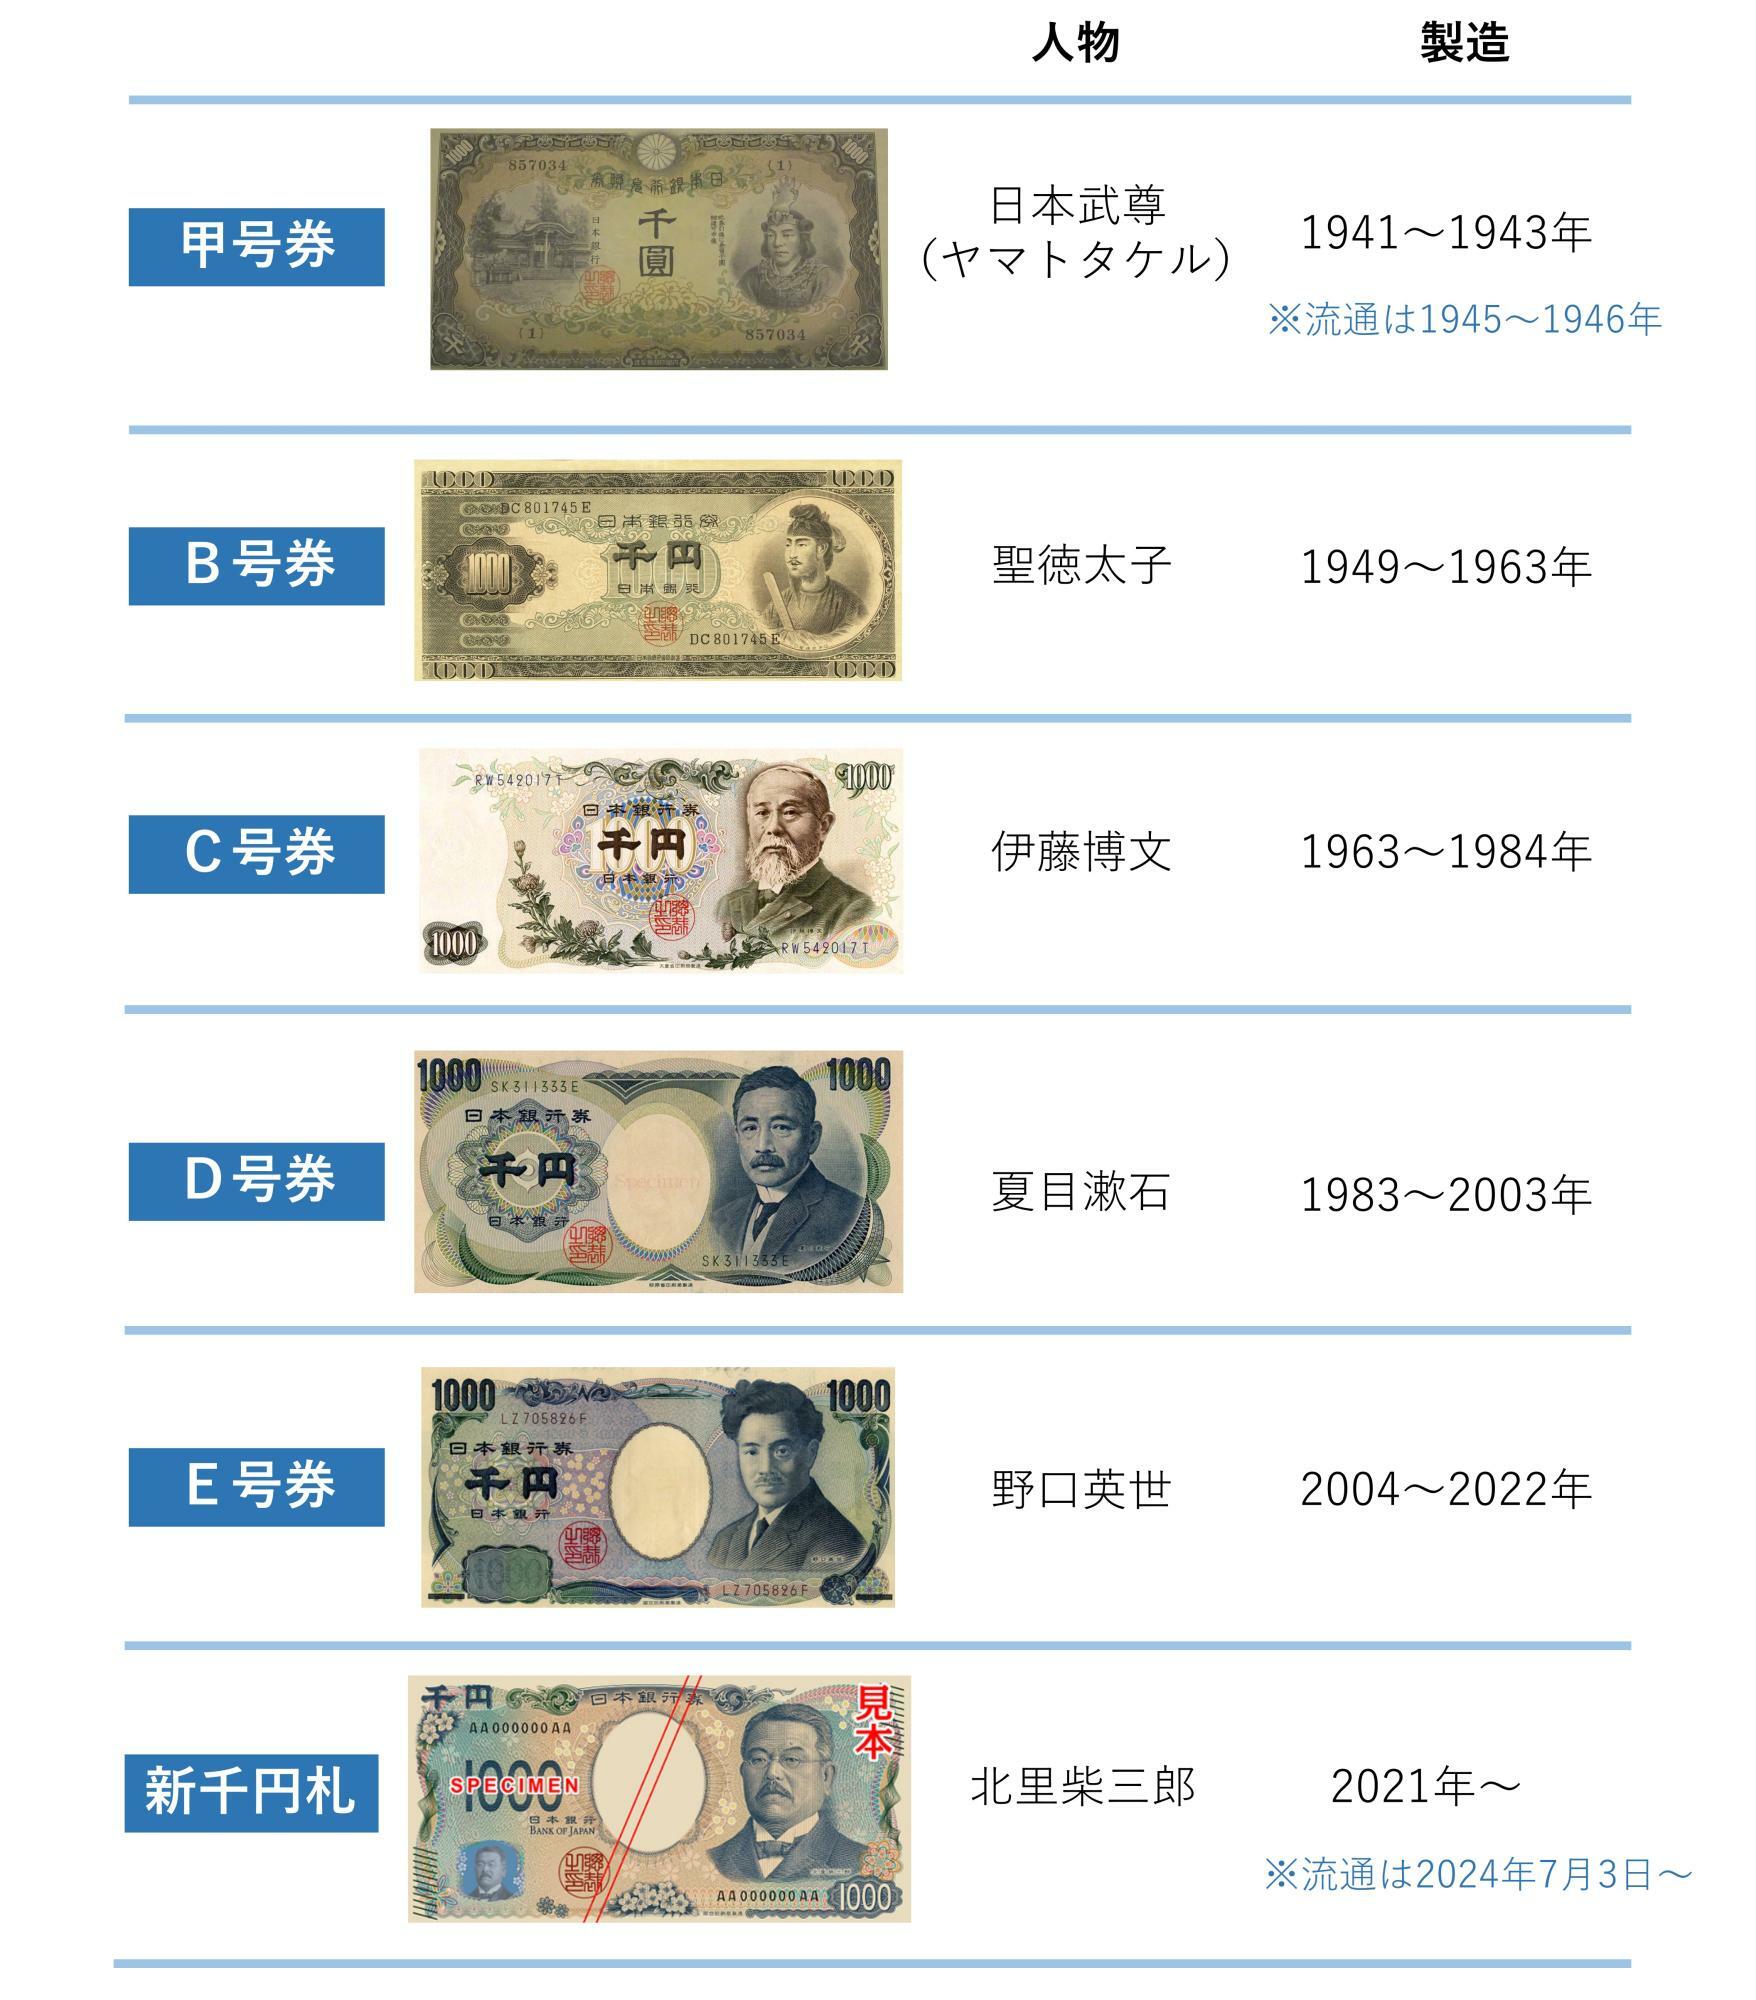 図. 新千円札の変遷（筆者作成。画像はWikipdeiaより）